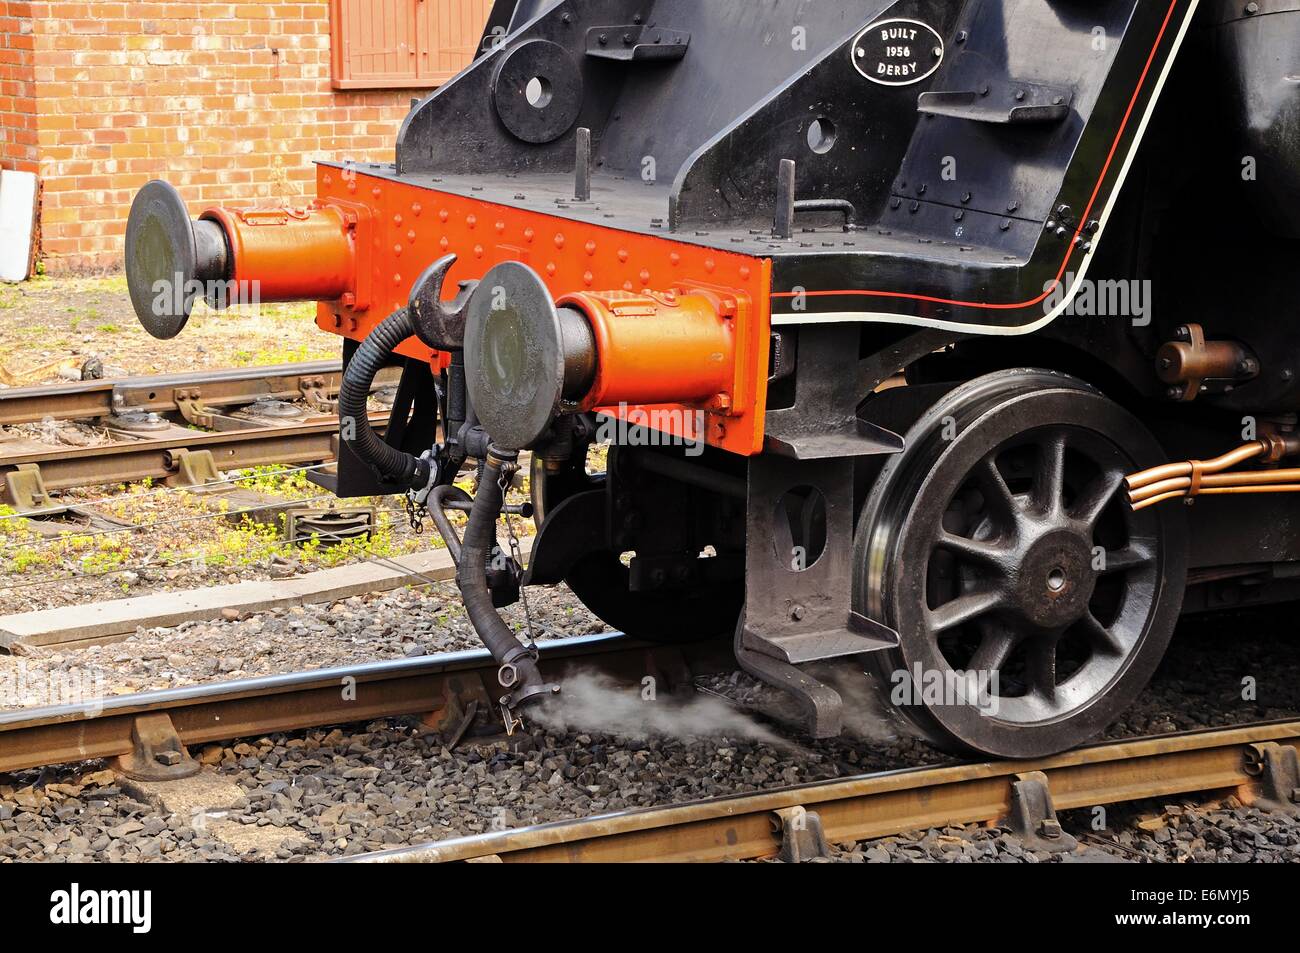 British Rail Locomotive à vapeur 4-6-0 standard de classe 5 nombre 73129 montrant buffer frontal et accouplements, Arley, Angleterre. Banque D'Images